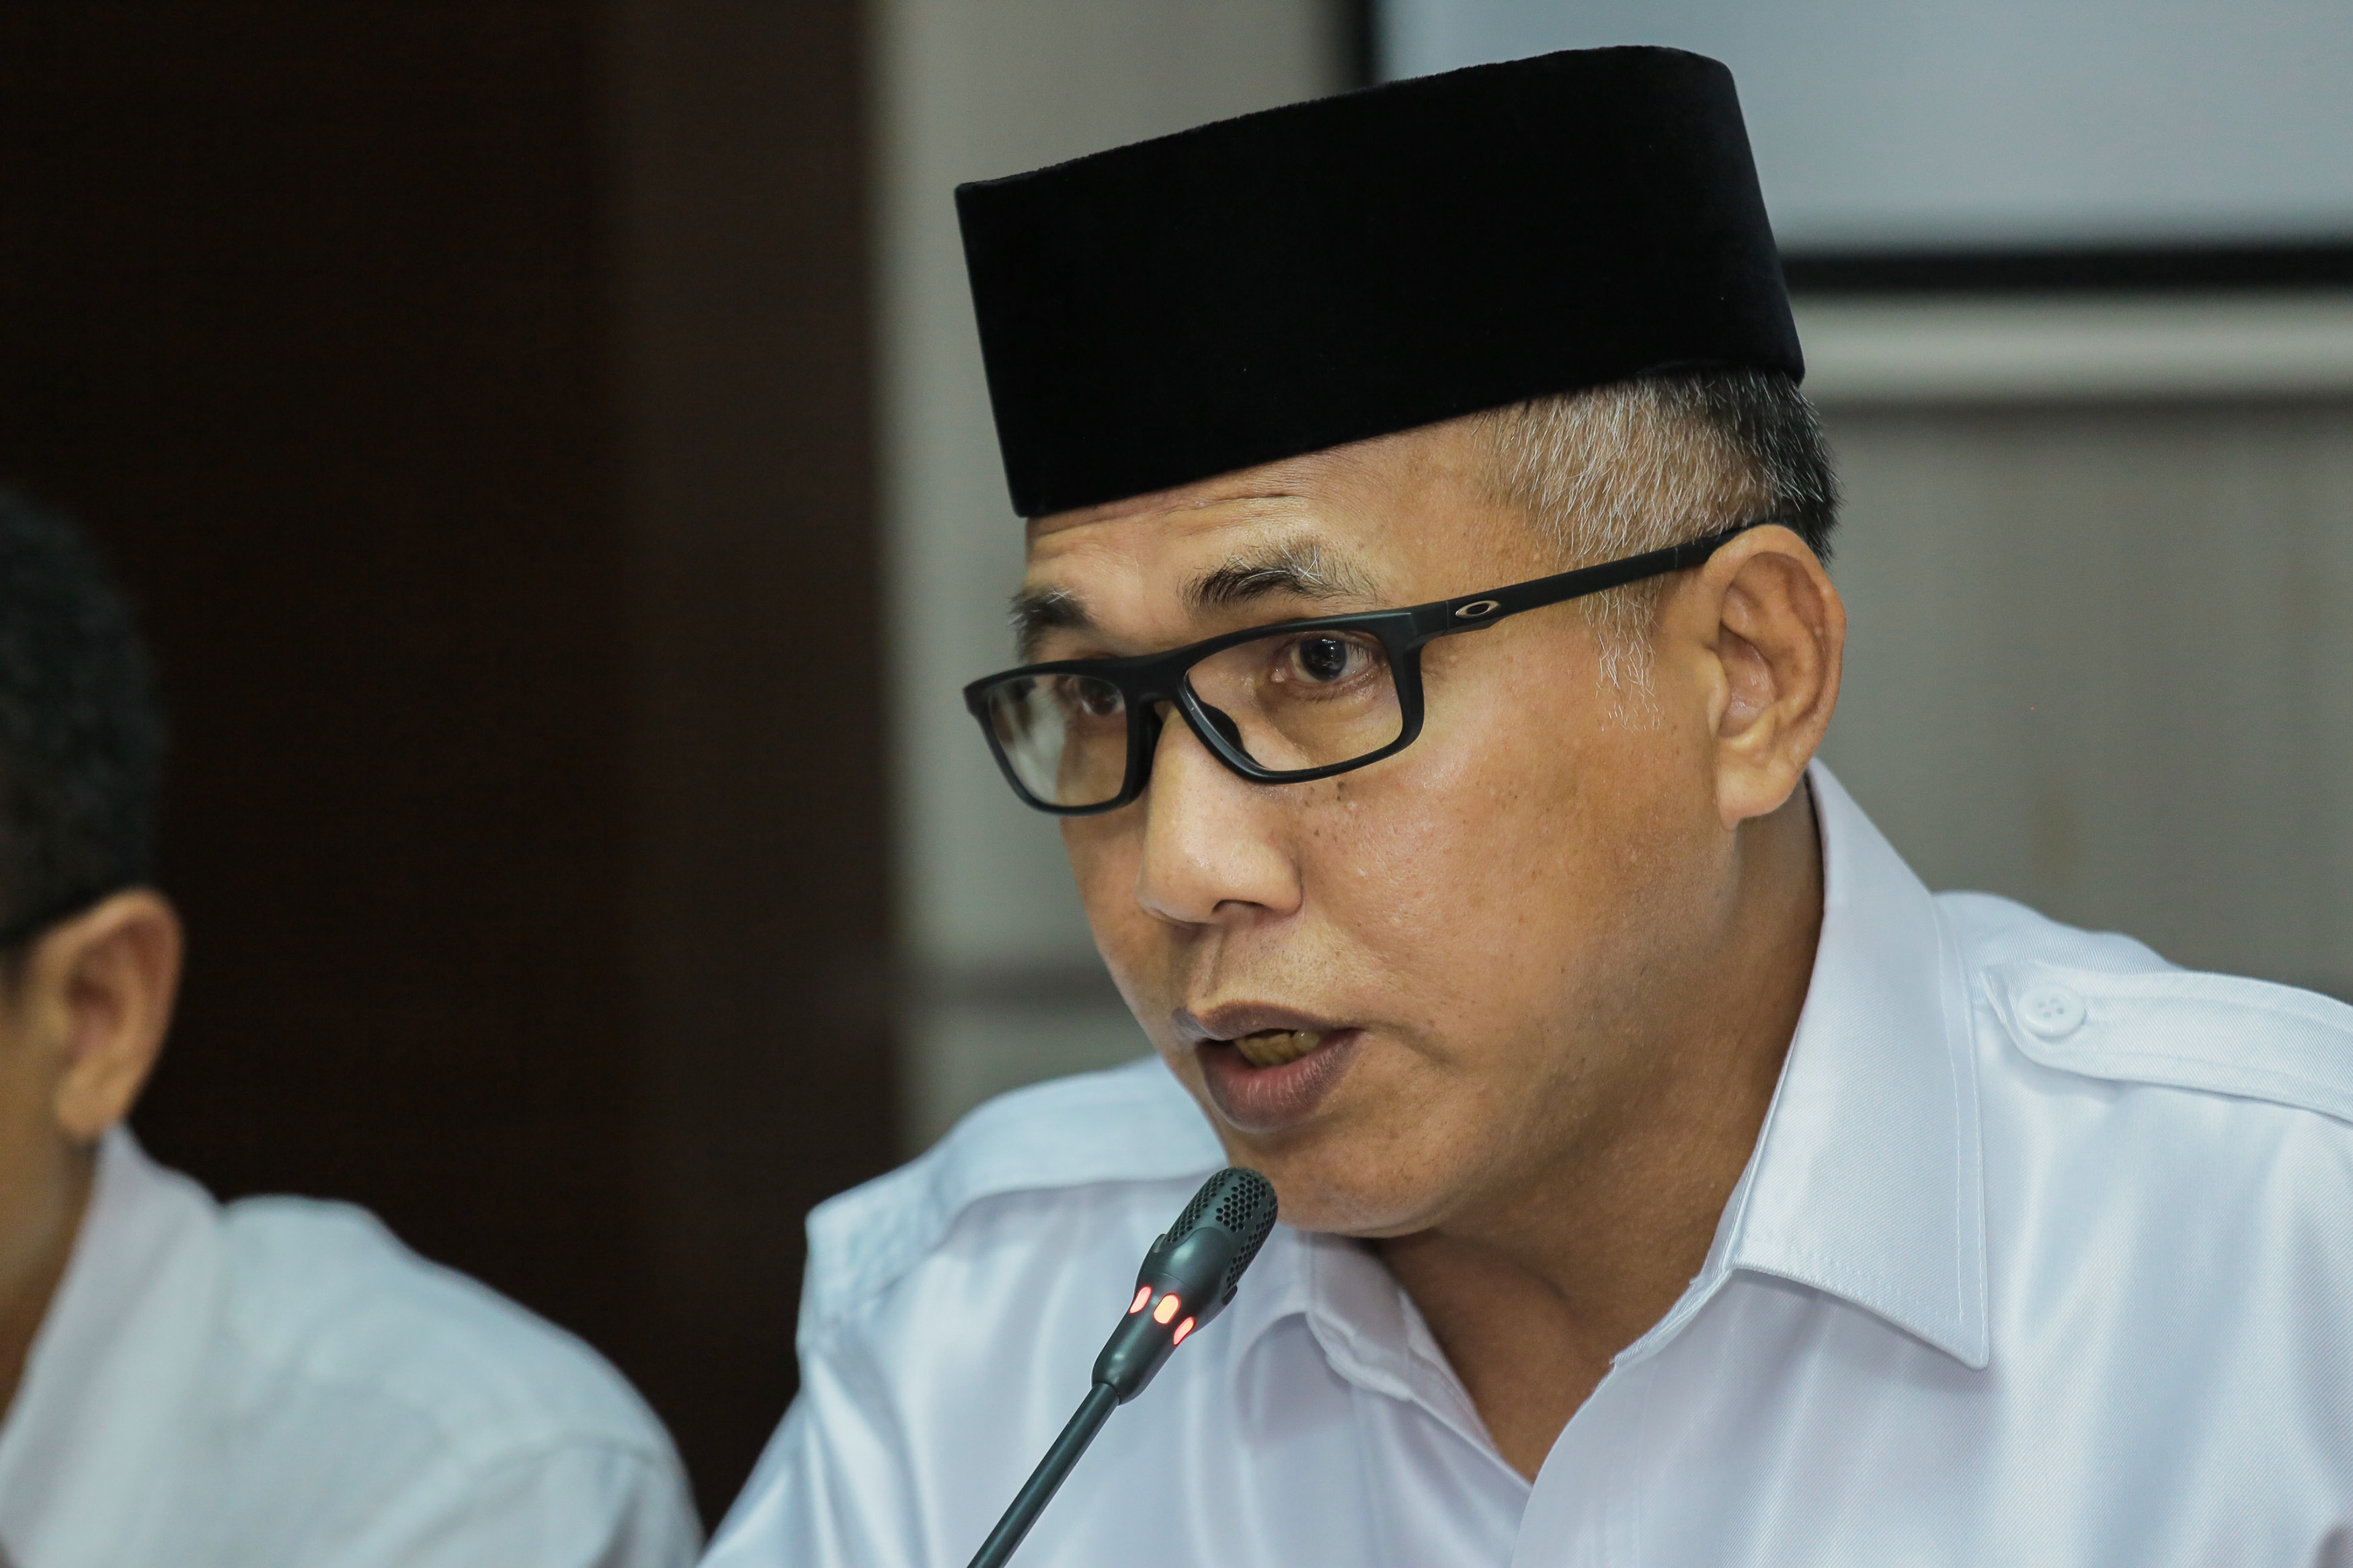 Mantan Bupati Aceh Besar Meninggal Dunia, Gubernur Aceh Sampaikan Belasungkawa